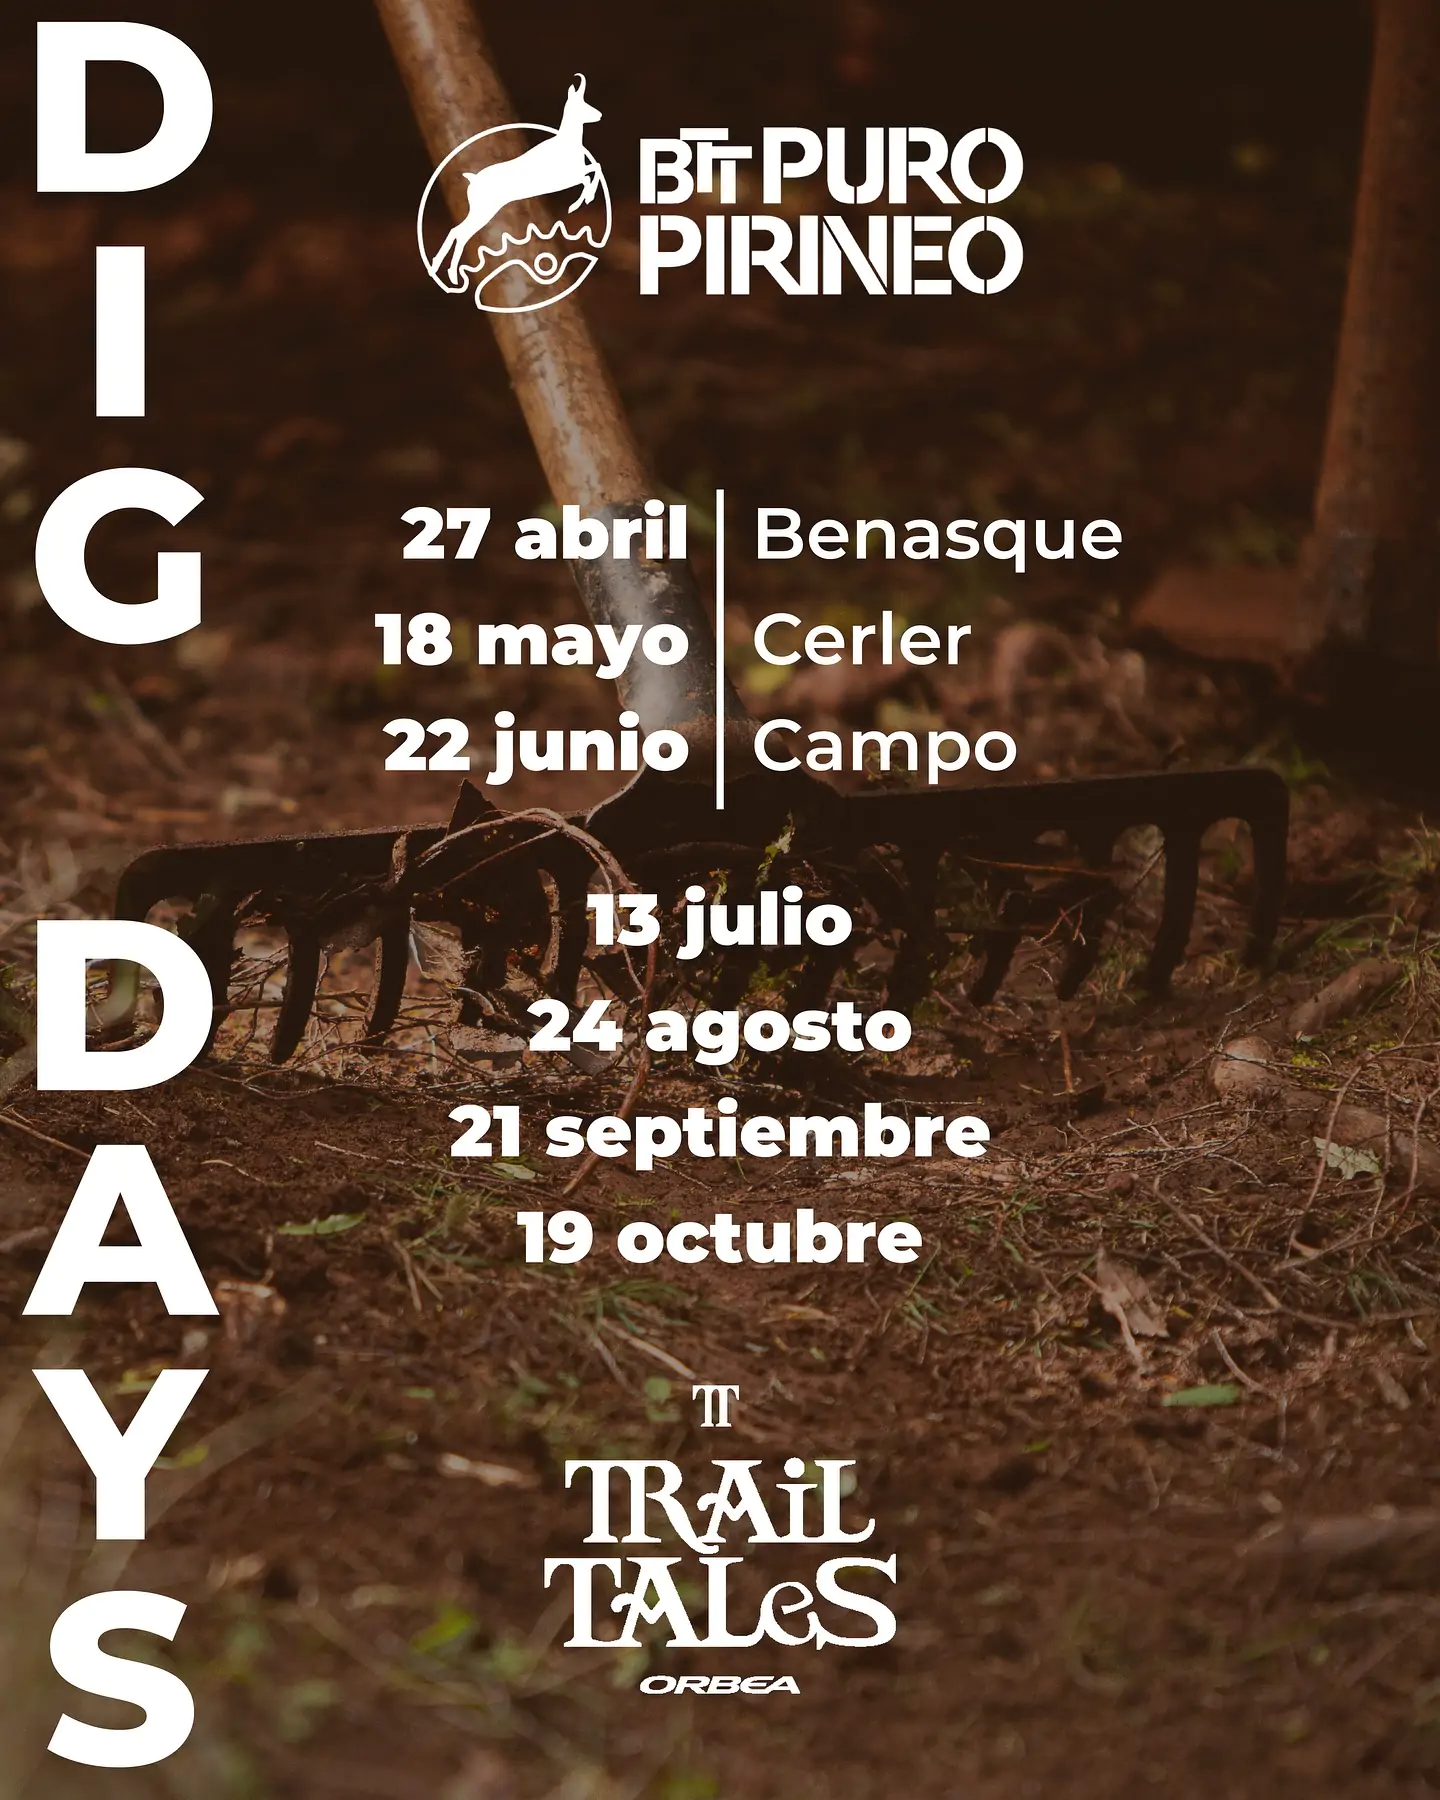 Dig days de Puro Pirineo | enBenas.com